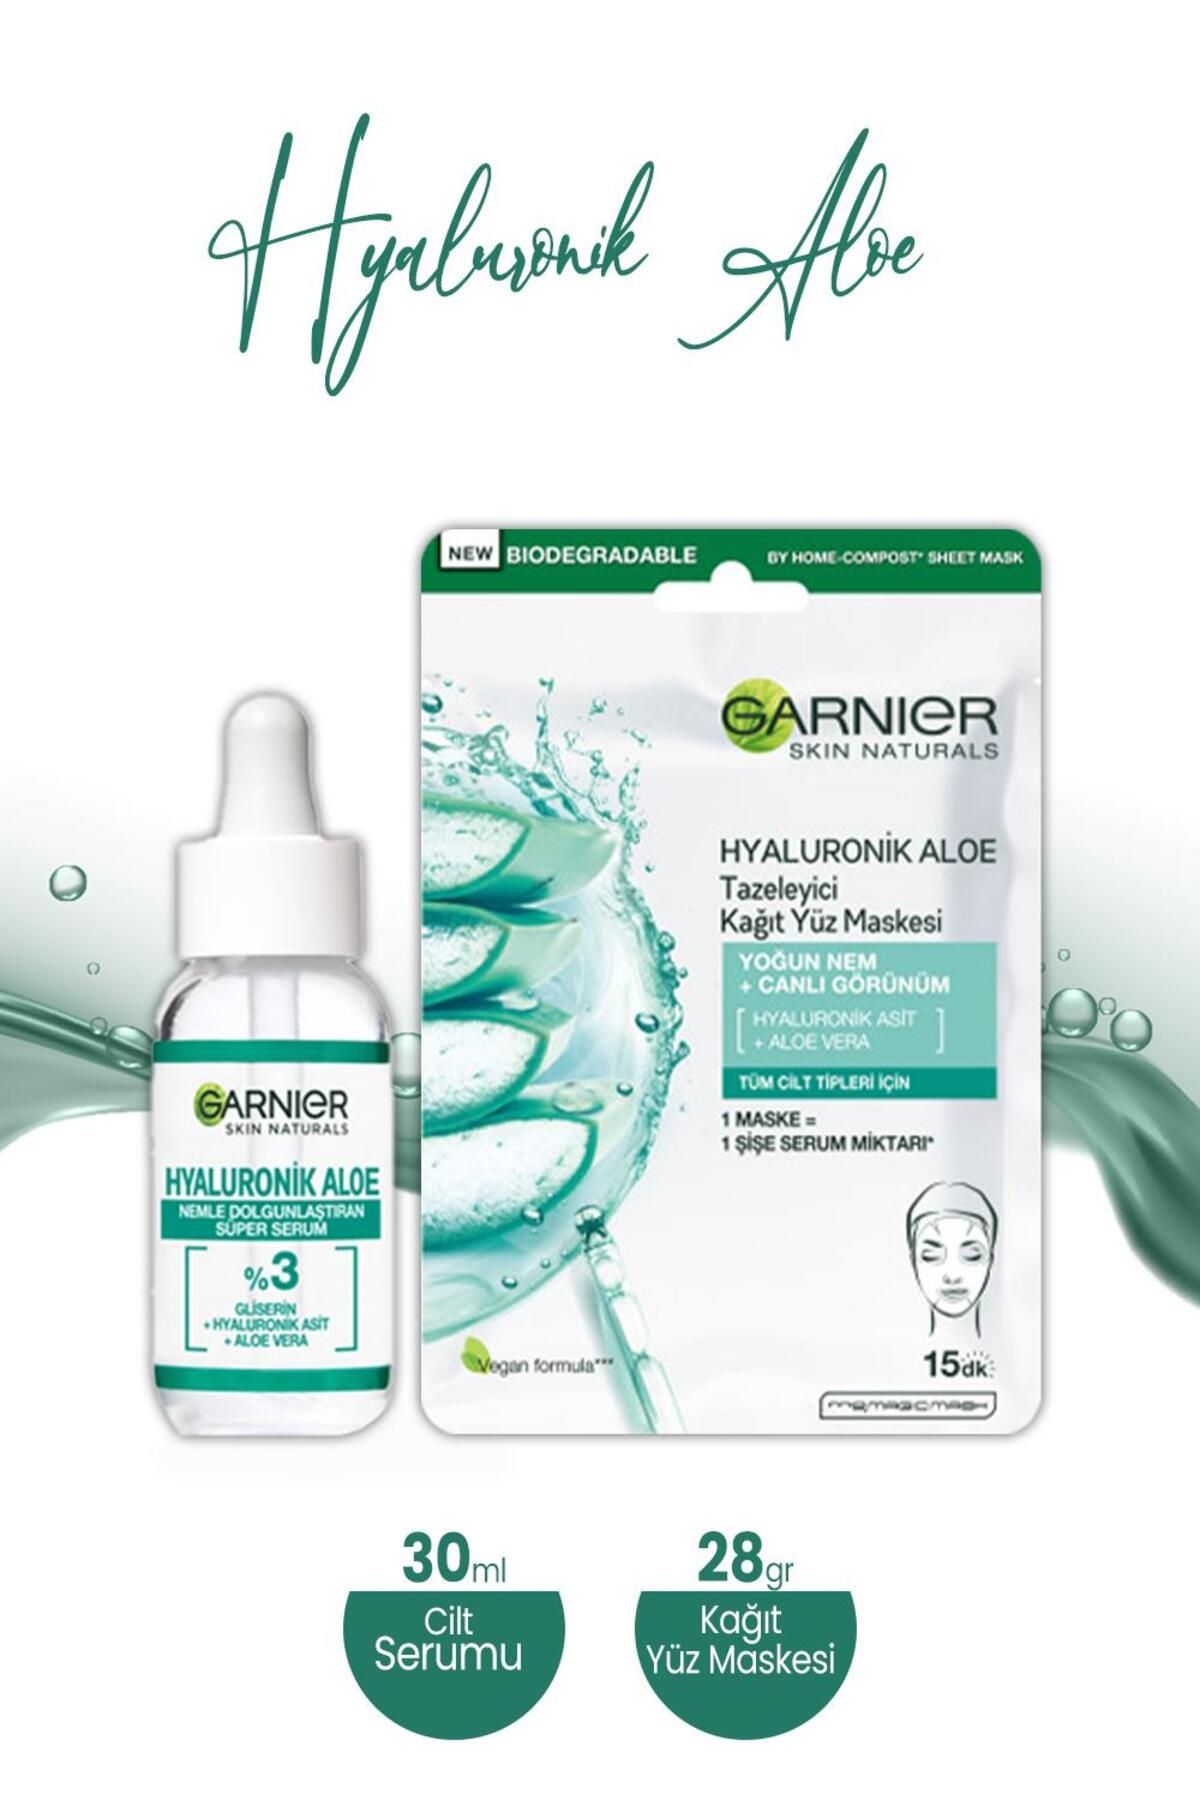 Garnier Hyaluronik Aloe Kağıt Yüz Maskesi Tazeleyici 28 gr Ve Dolgunlaştıran Serum 30 ml